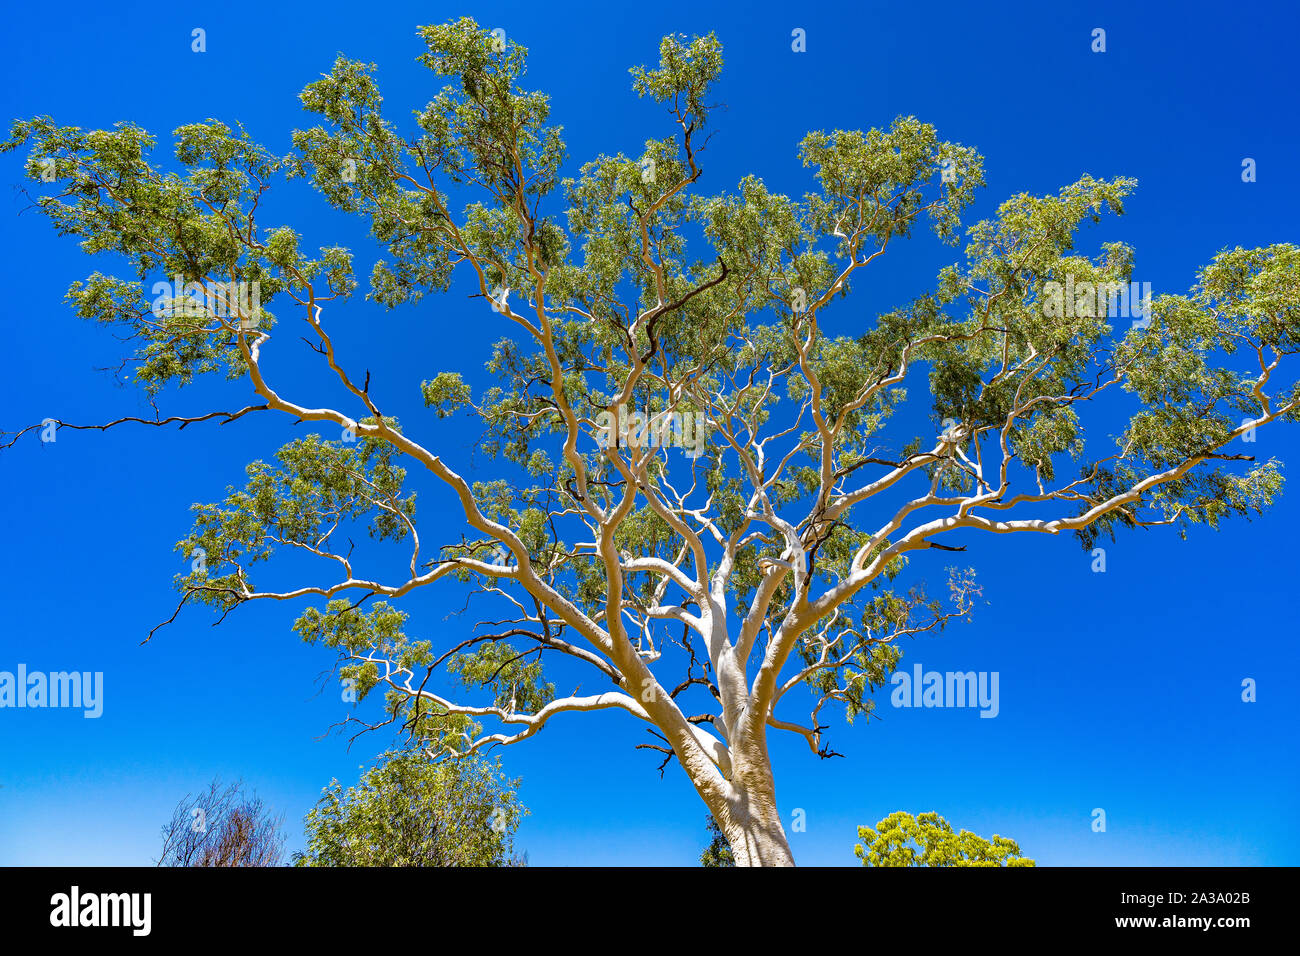 La plus grande et la plus ancienne ghost gum tree en Australie est situé dans l'East MacDonnell Ranges dans le Territoire du Nord, Australie. Banque D'Images